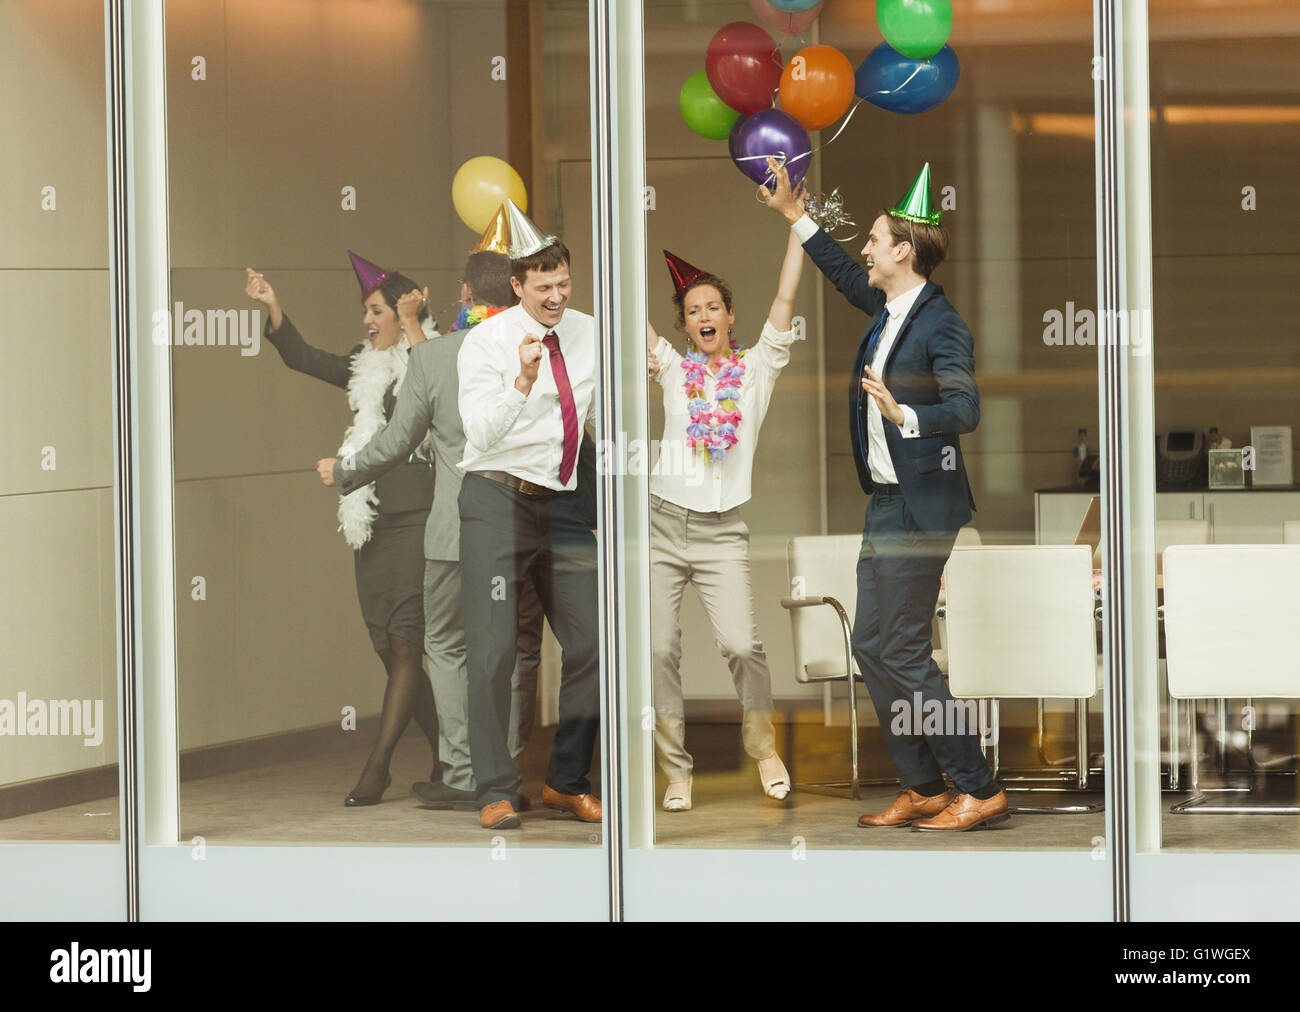 Les gens d'affaires wearing party hats et danser avec des ballons à la fenêtre de la salle de conférence Banque D'Images